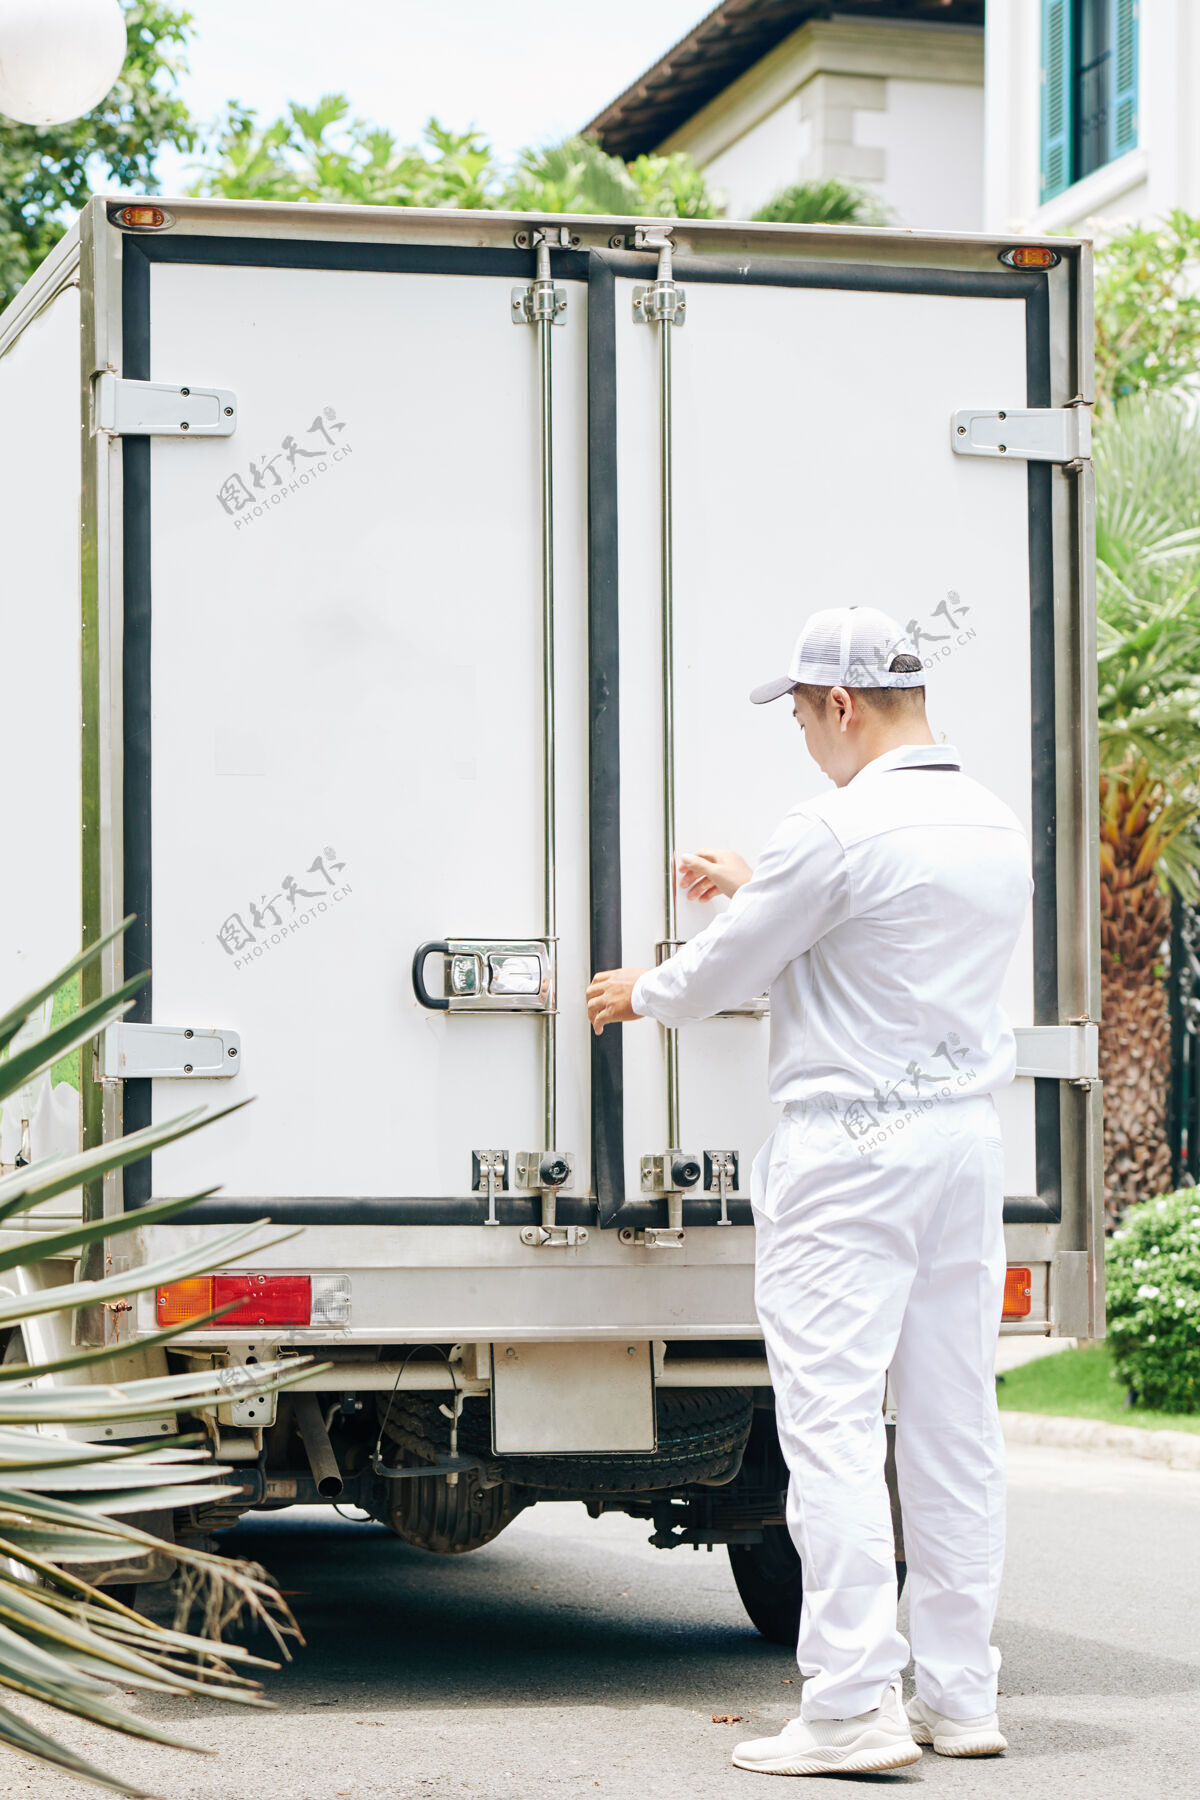 卸货一个身穿白色制服的送货员在把牛奶瓶装上货车后 关上了货车后备箱的门服务工作箱子